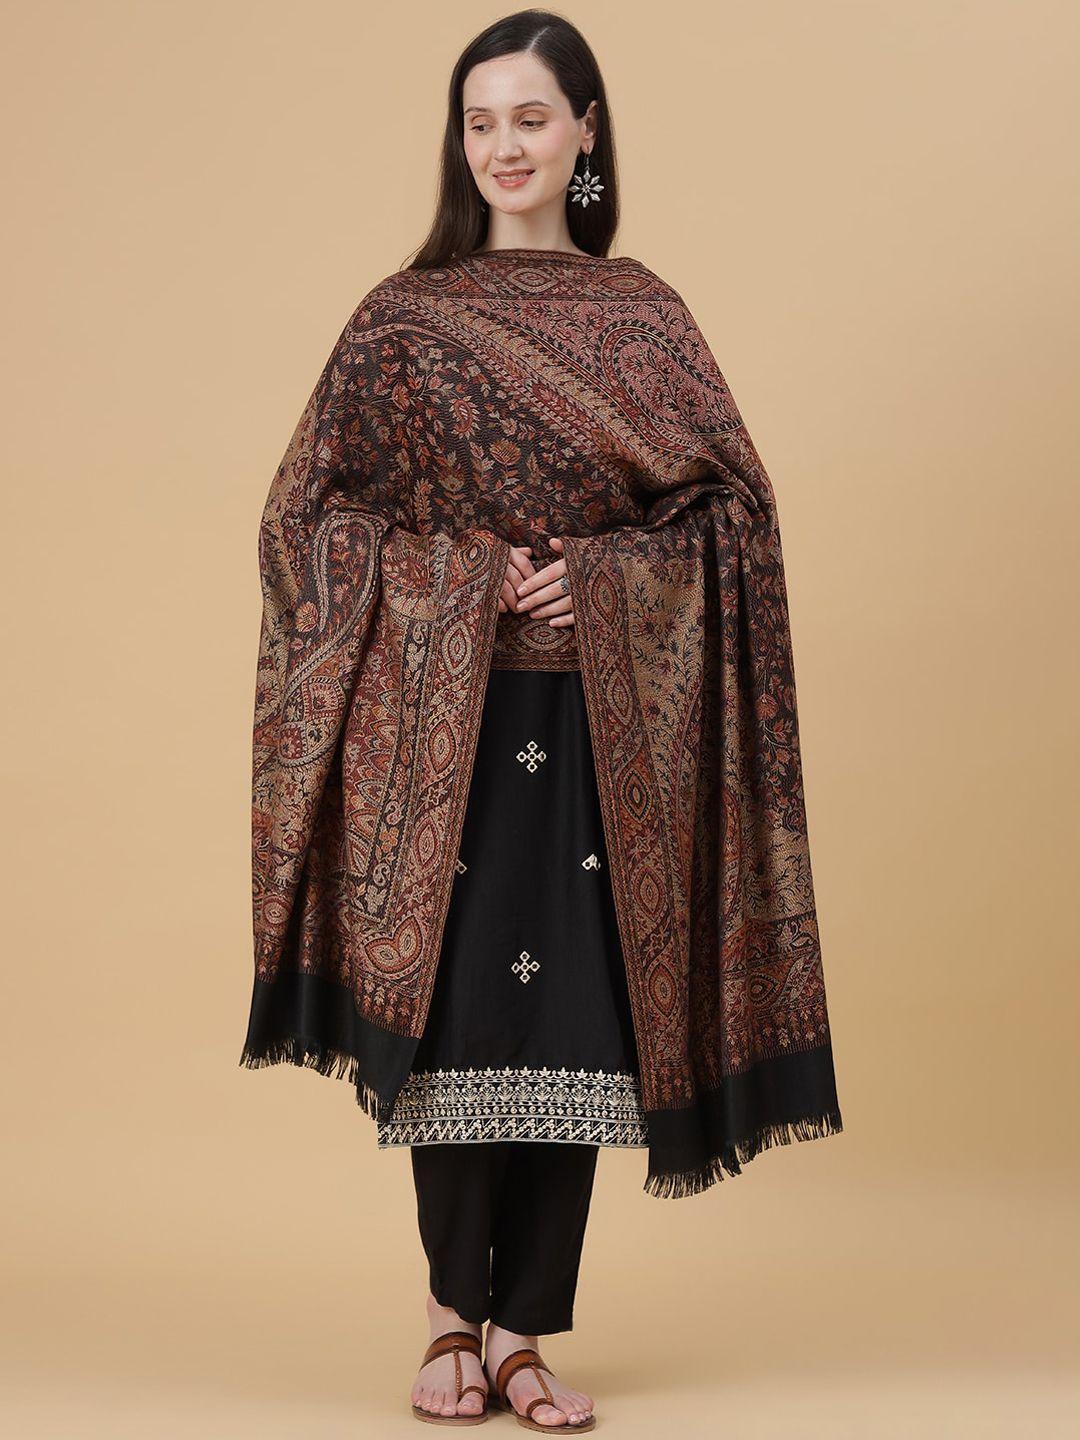 zamour floral woven design jamawar shawl